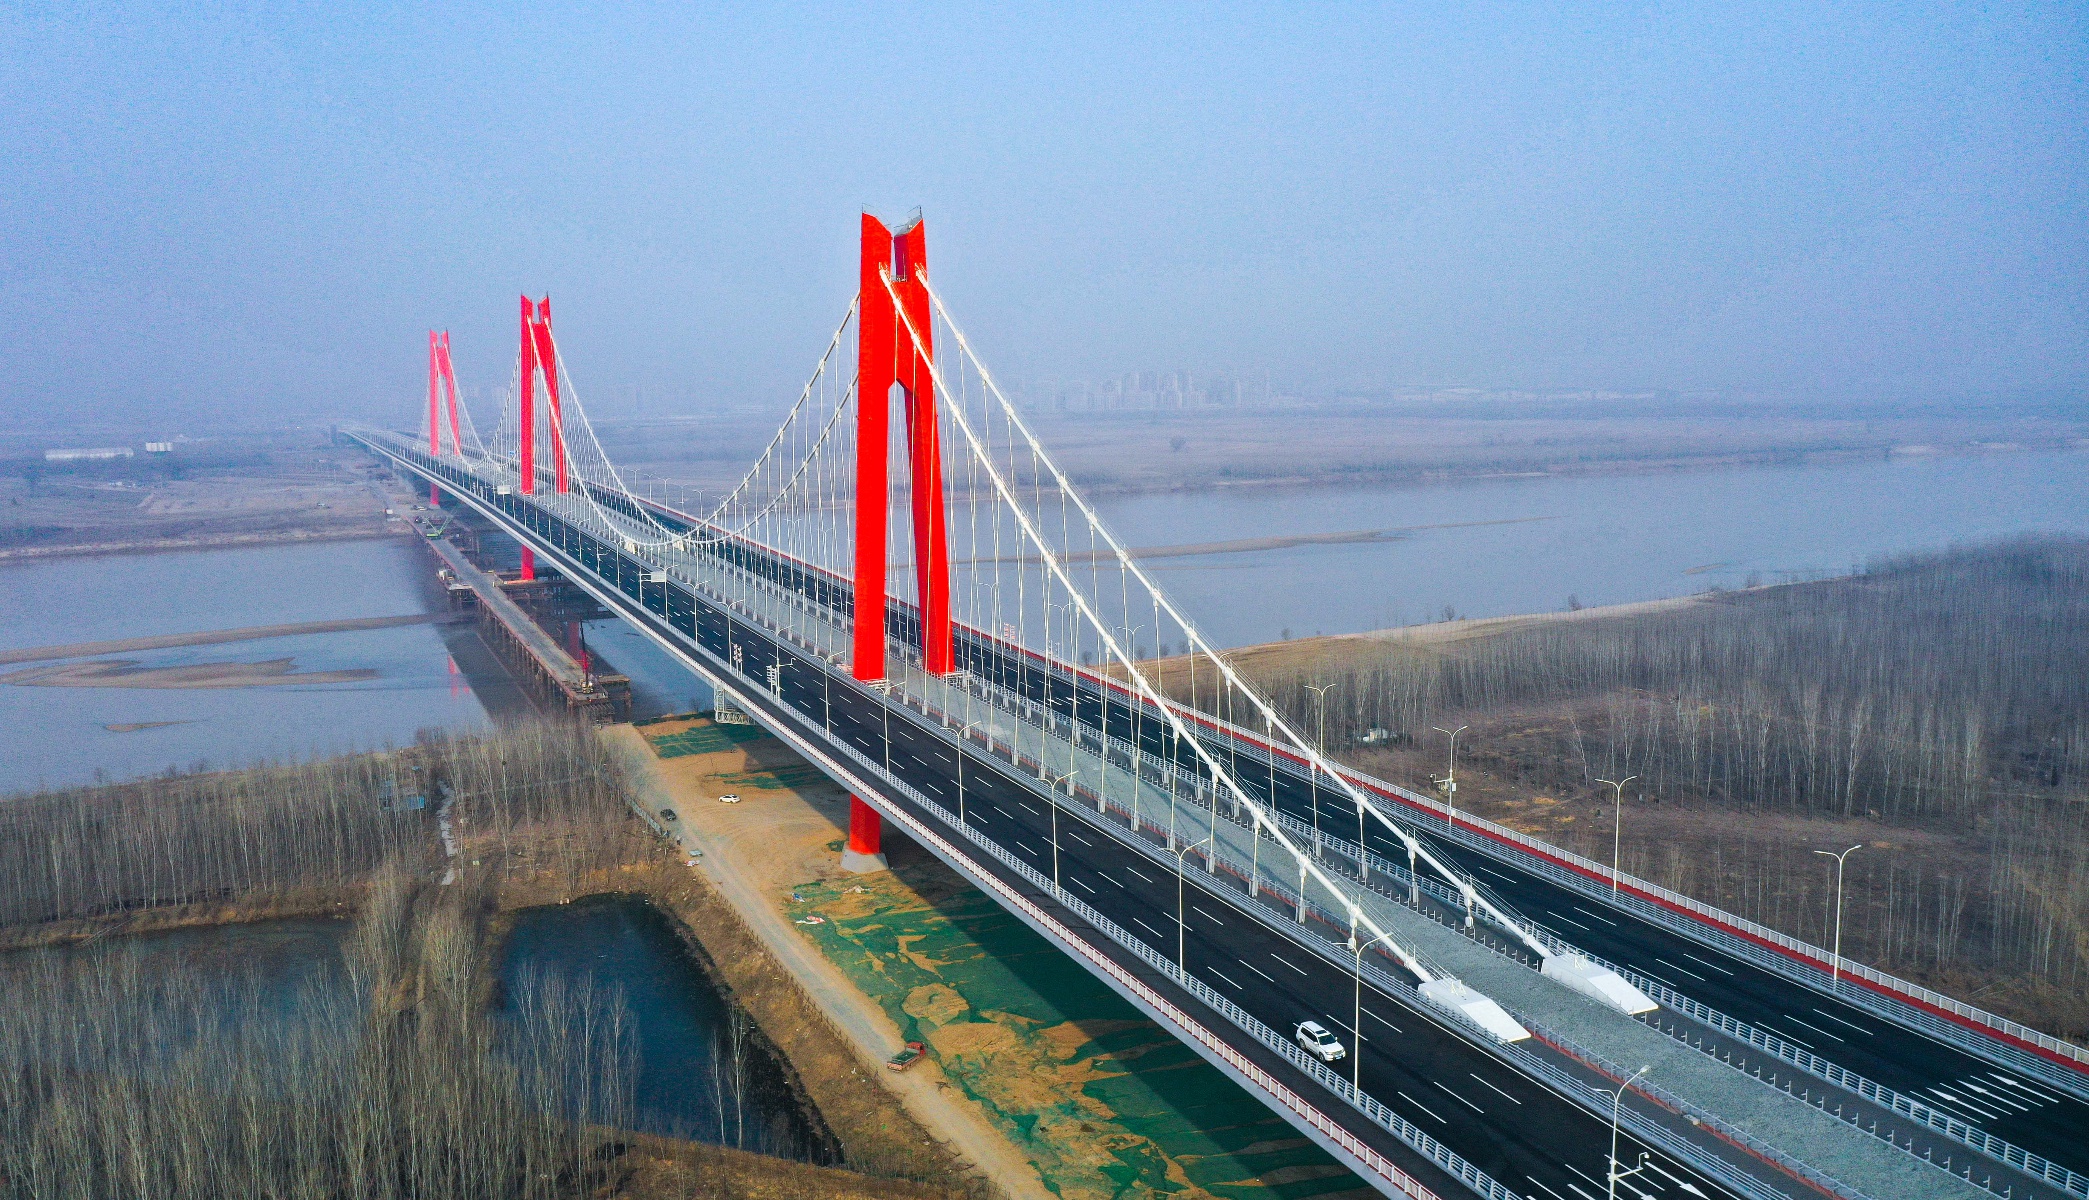 济南黄河凤凰大桥收费图片